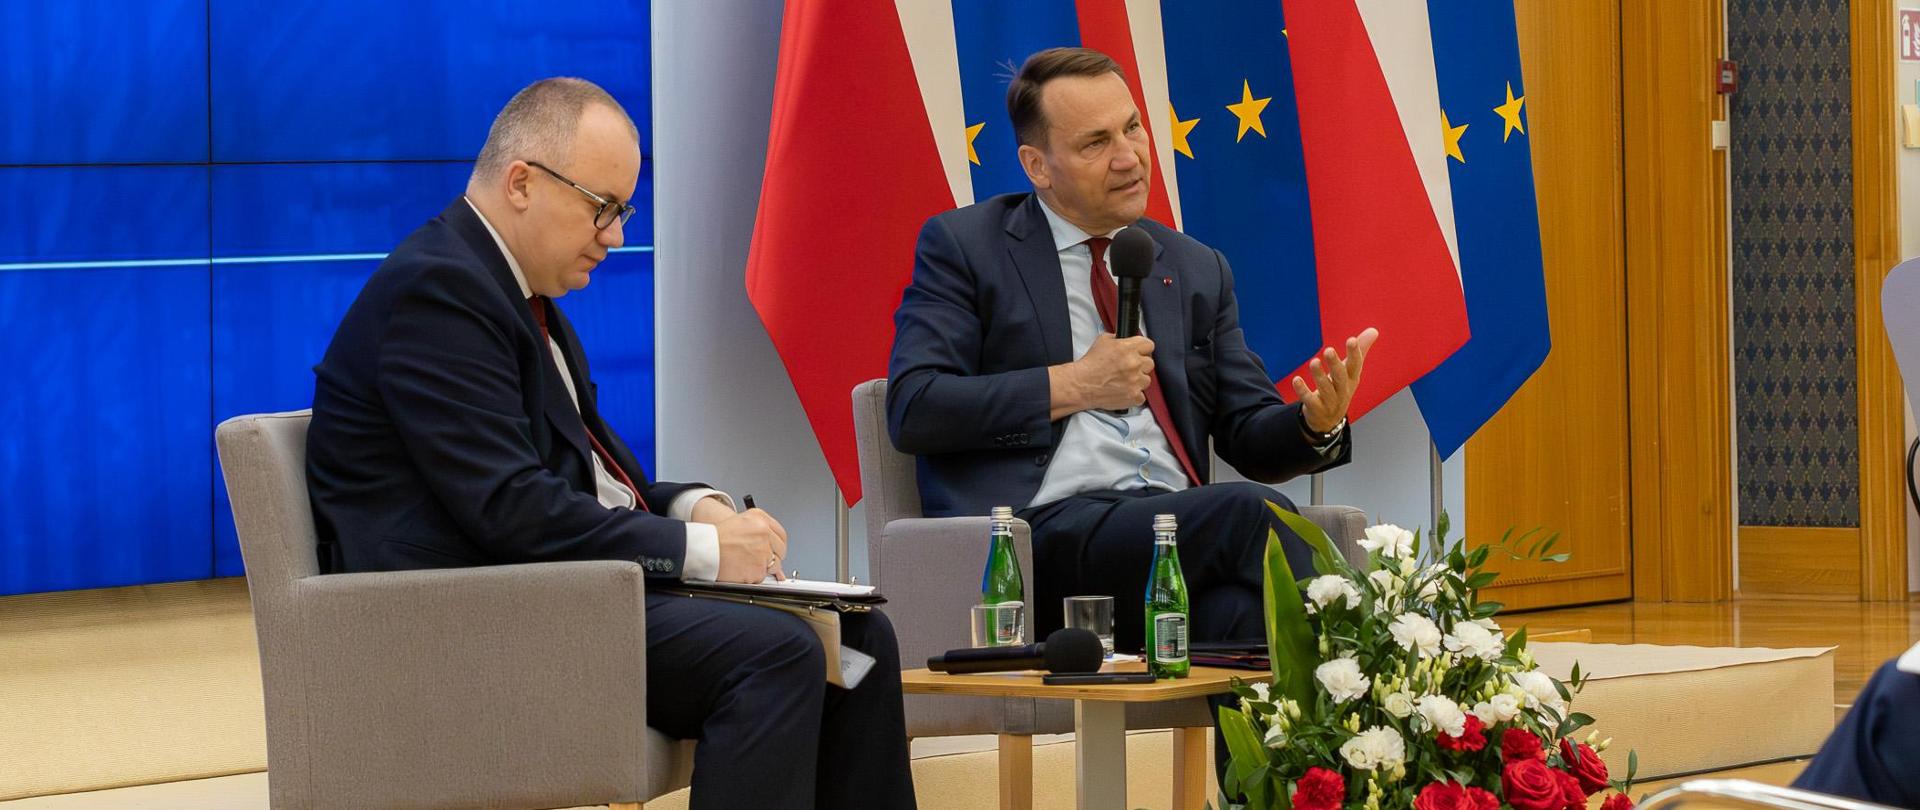 Briefing Ministra Spraw Zagranicznych i Ministra Sprawiedliwości nt. przywracania praworządności i porządku konstytucyjnego w Polsce